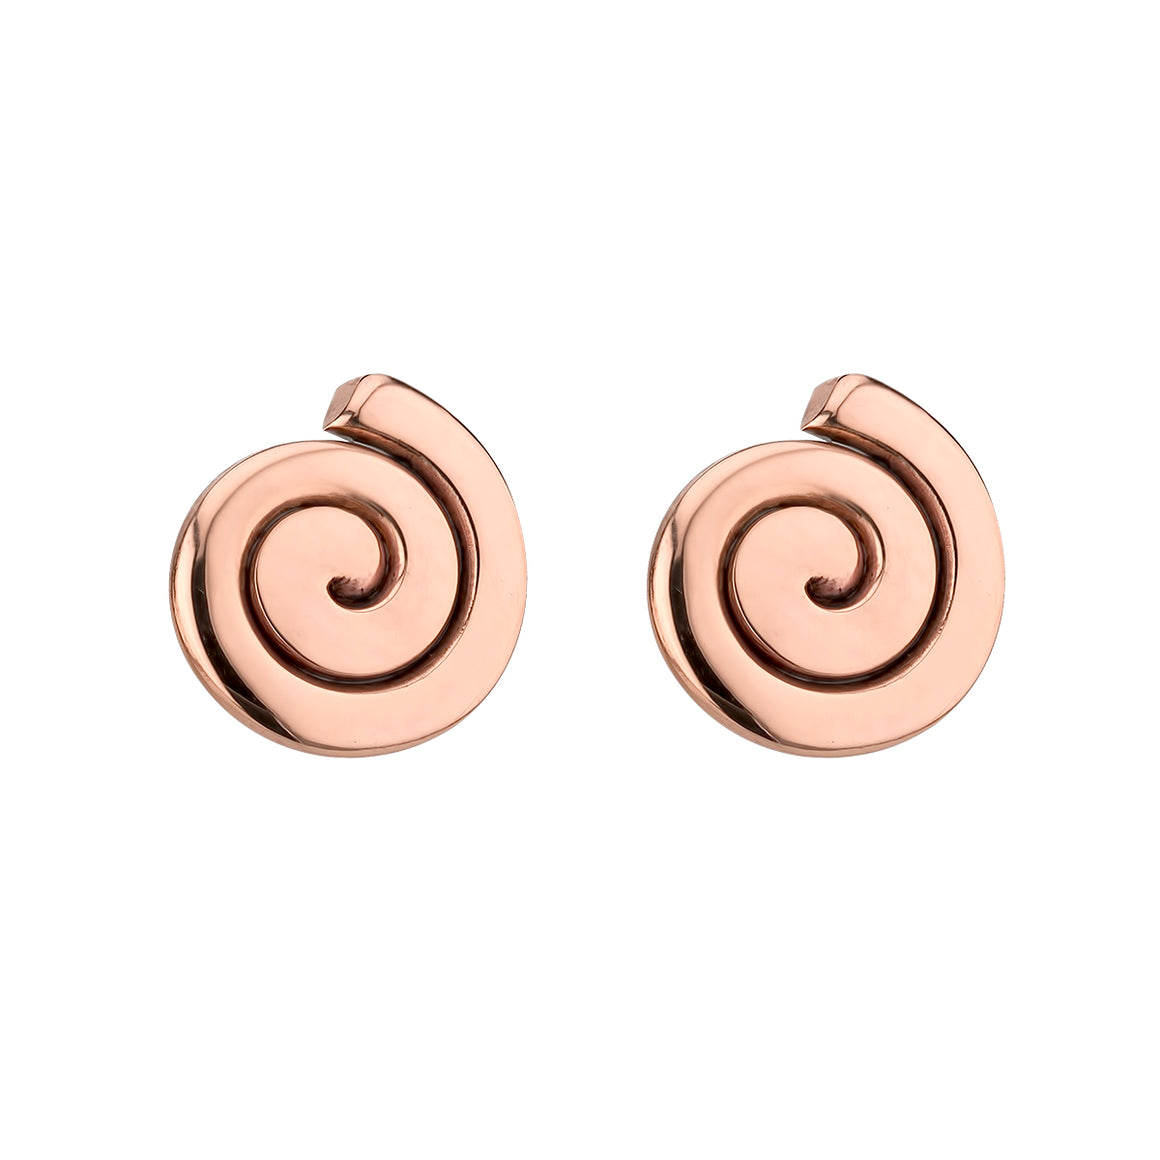 Copper Spiral Stud Earrings by Grange Celtic jewellery.